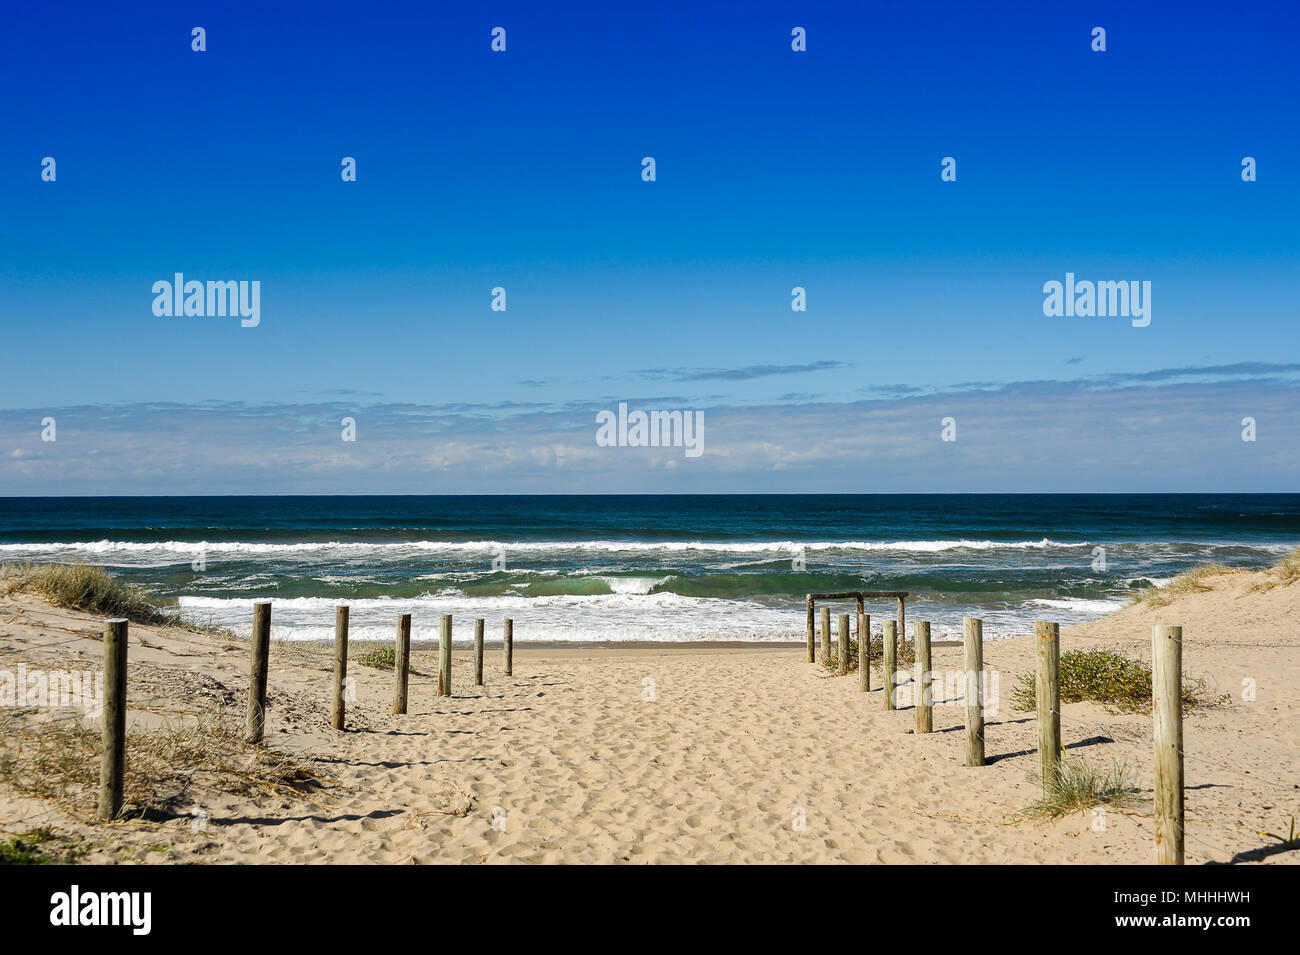 Pathway to the waves, Seven Mile Beach, NSW, Australie. Seascape, belle piste sablonneuse à travers les dunes, l'eau marine, surf blanc, ciel bleu profond Banque D'Images